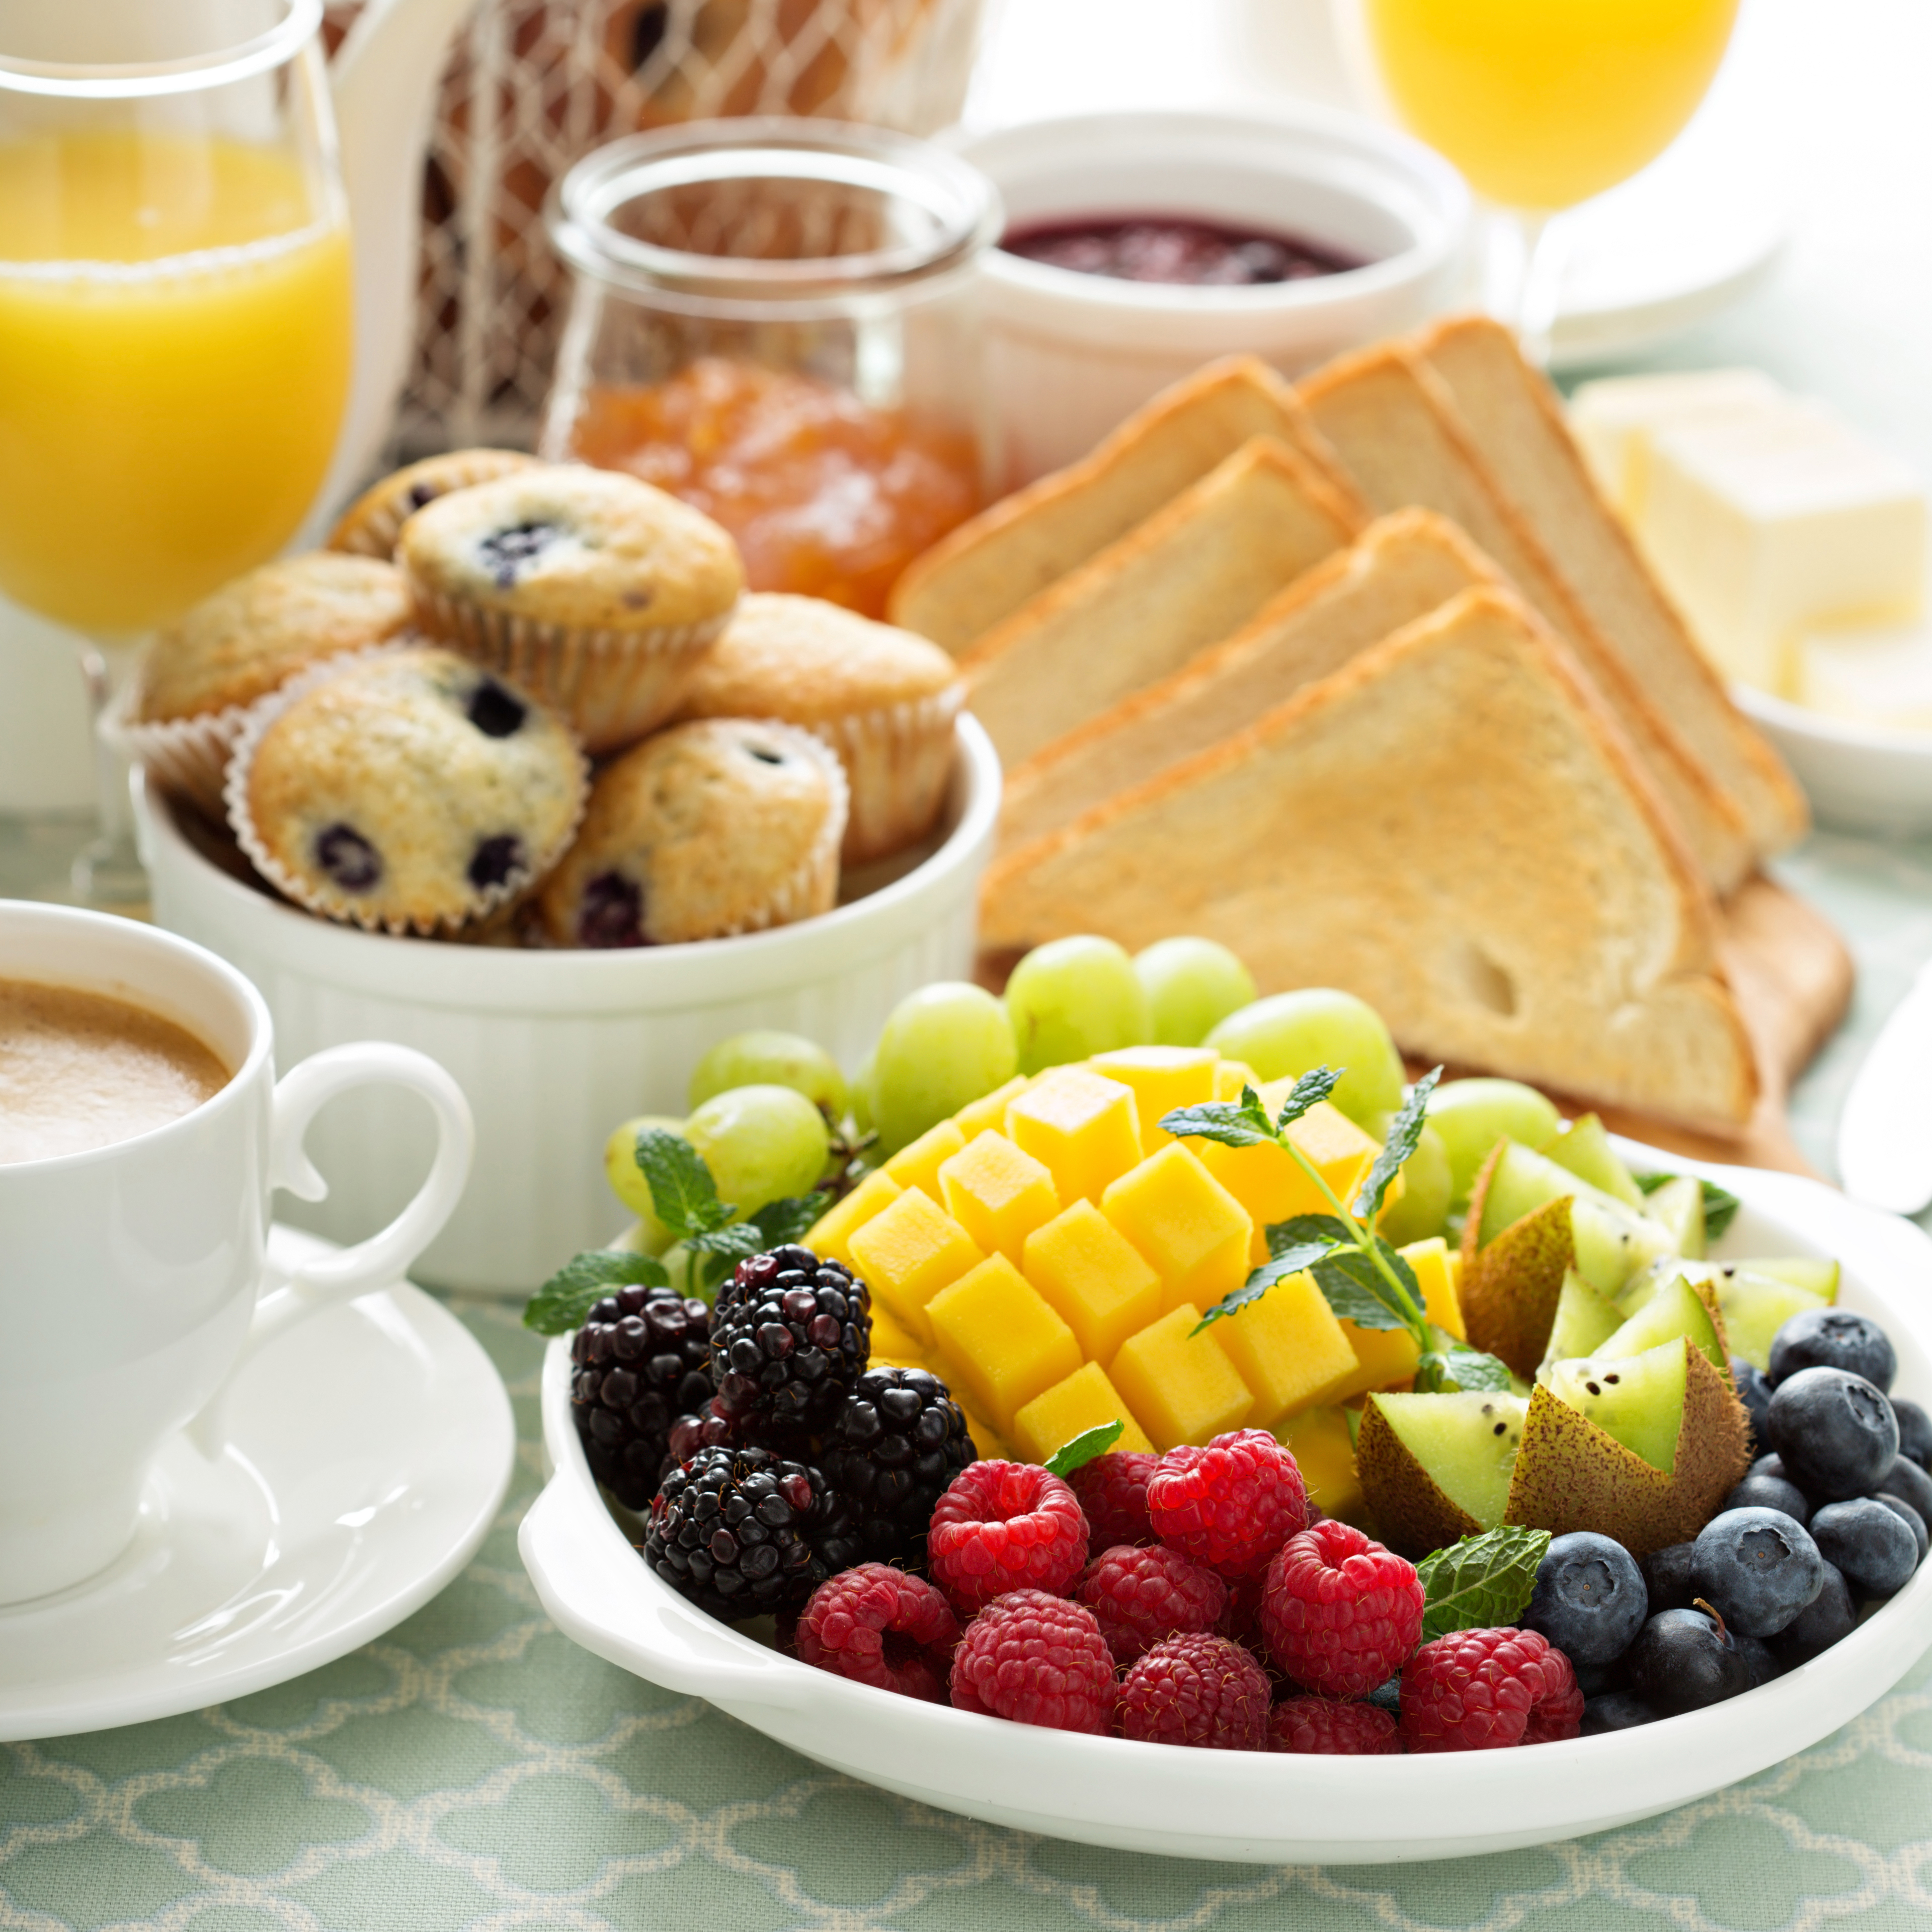 Empieza tu día con un desayuno bio